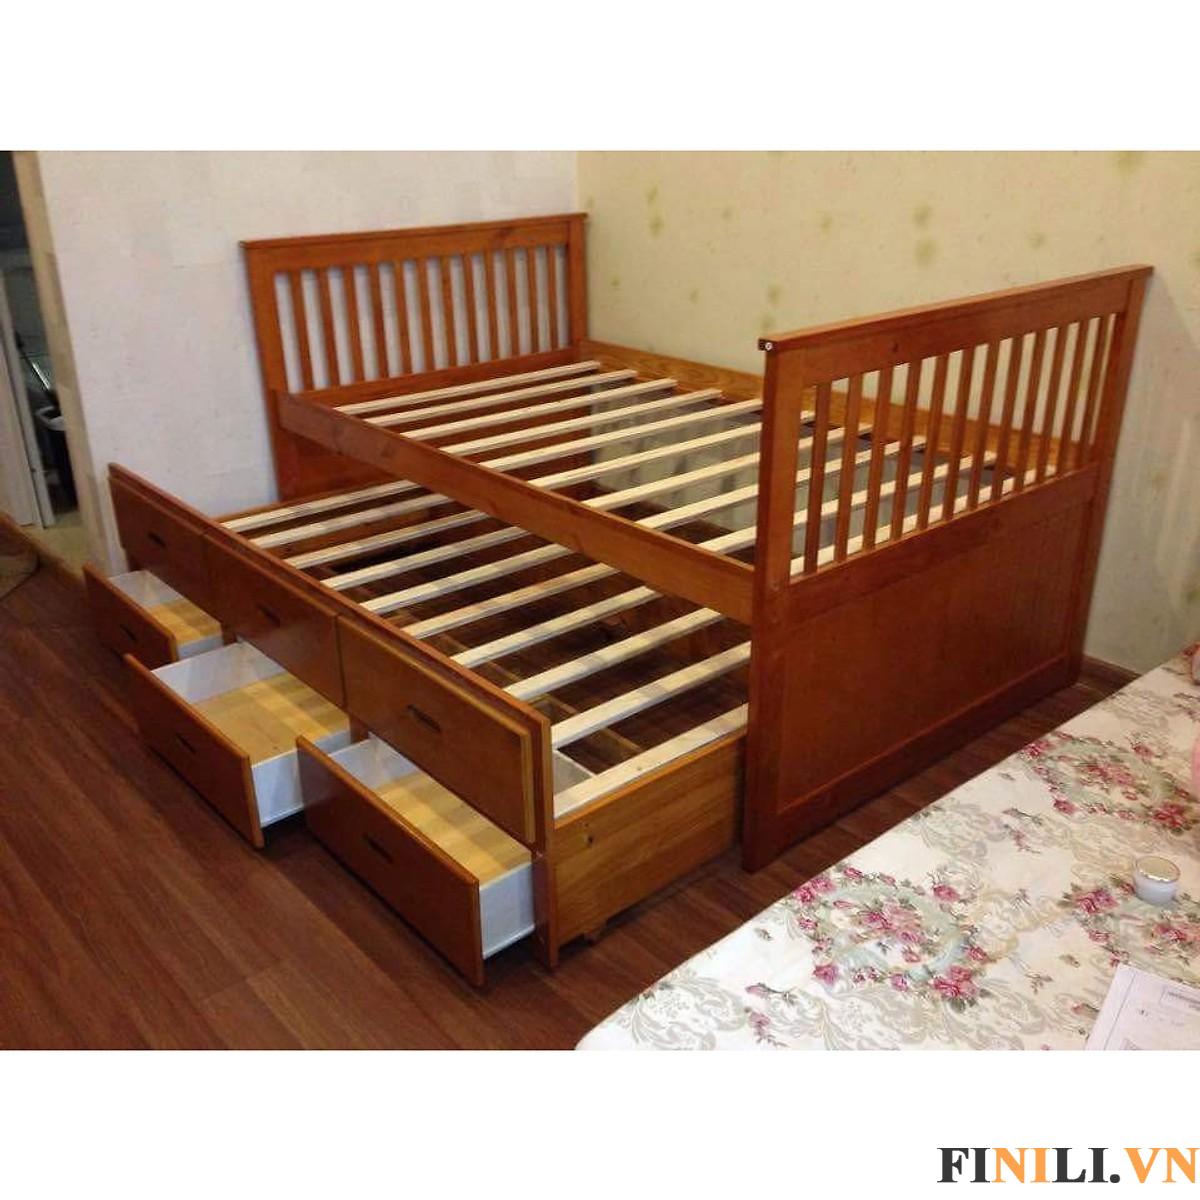 Giường hộp FNL 0032 được sản xuất với nguyên liệu chính là gỗ thông với khả năng chống mối mọt tốt